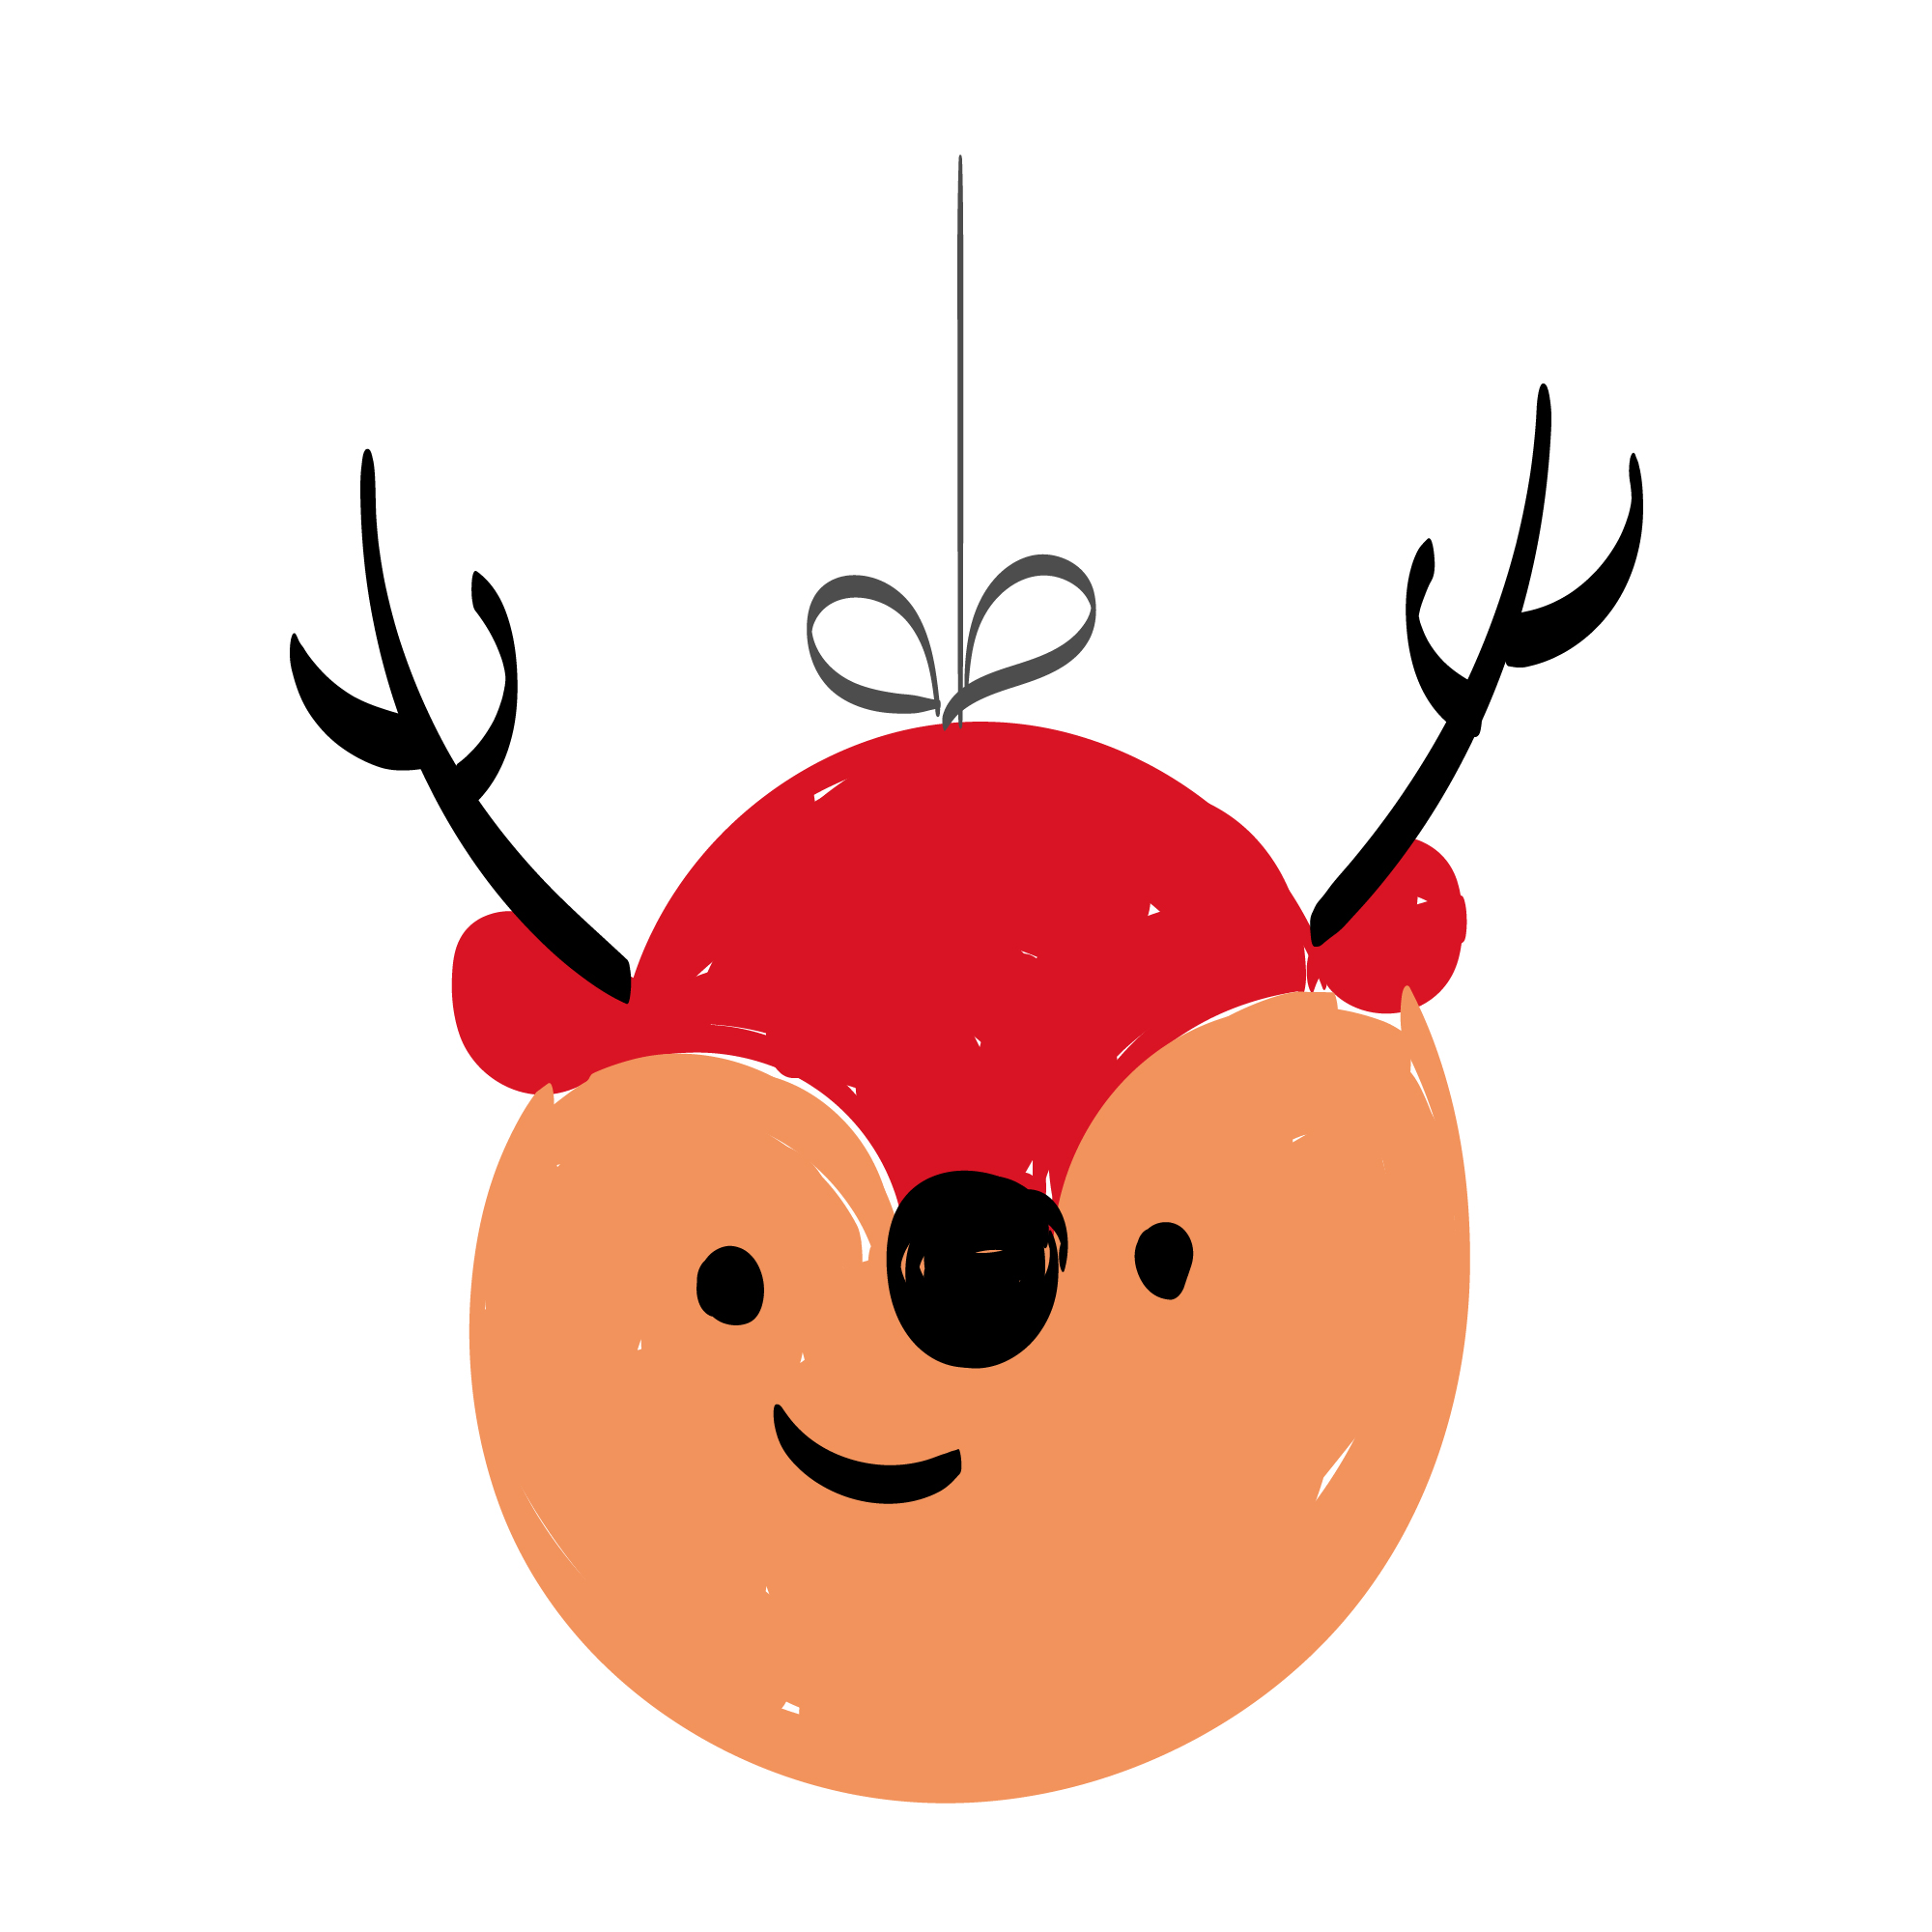 Image with Christmas animal design.